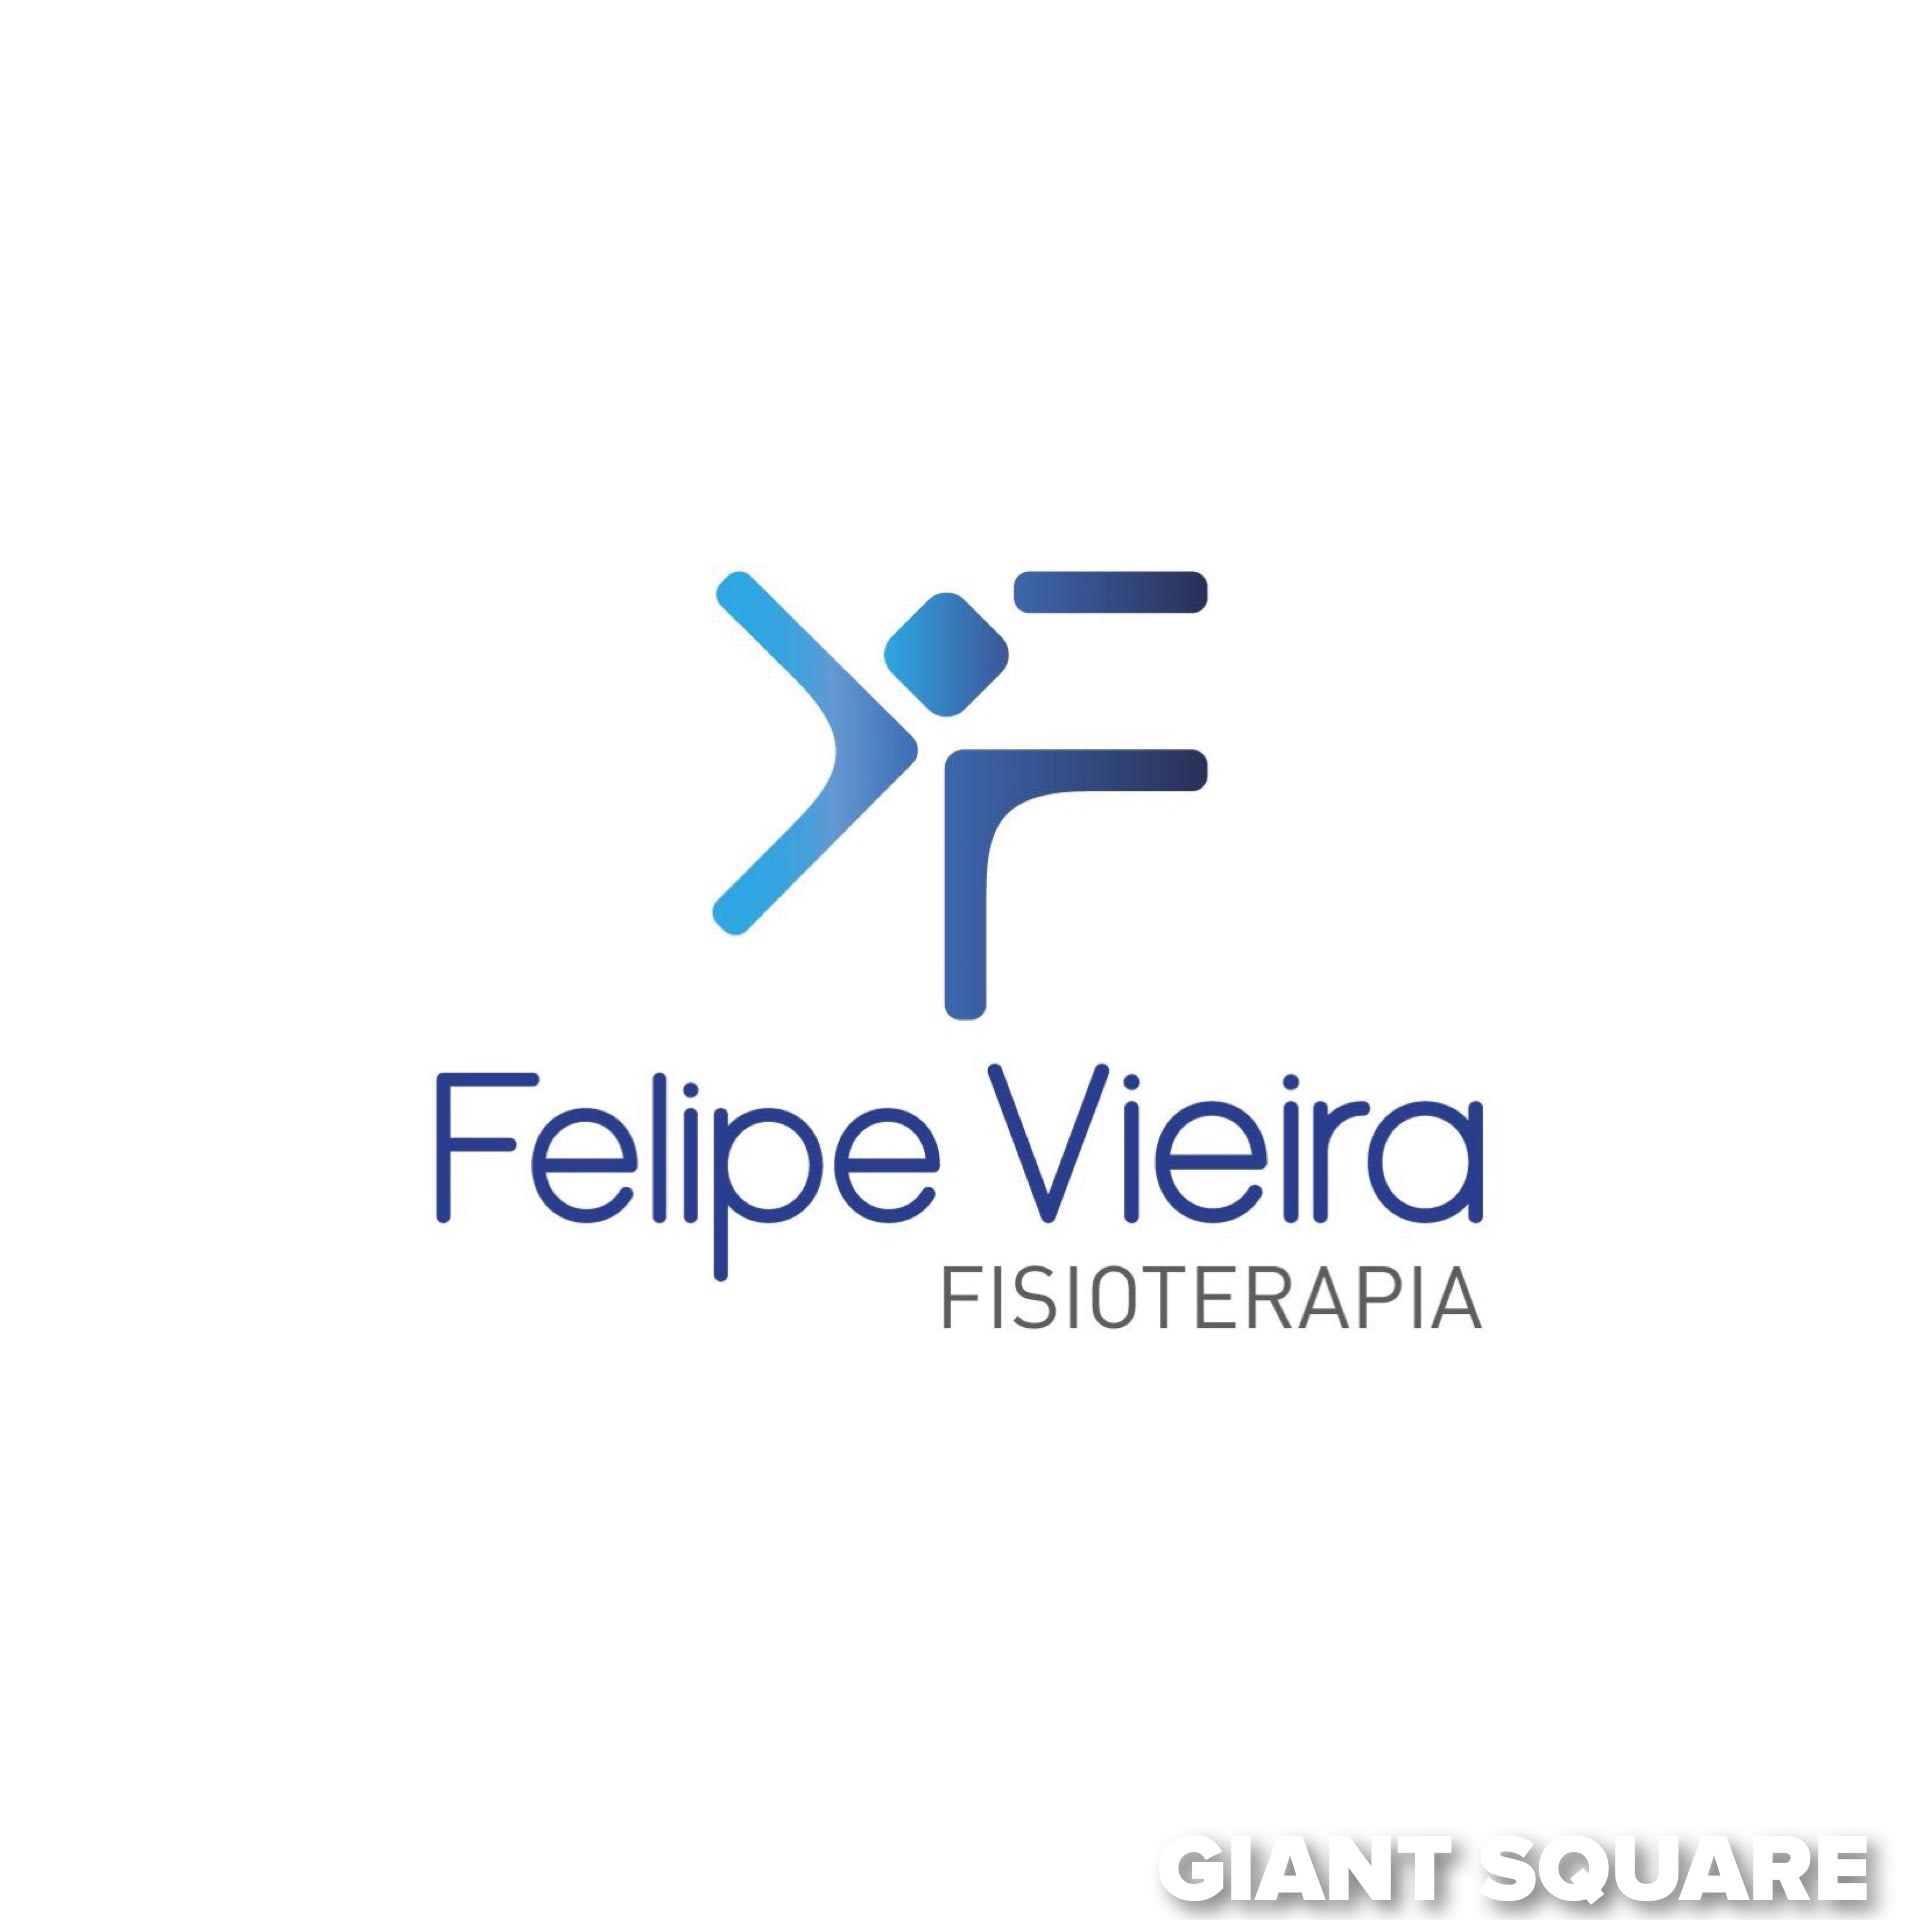 Felipe Vieira Fisioterapia